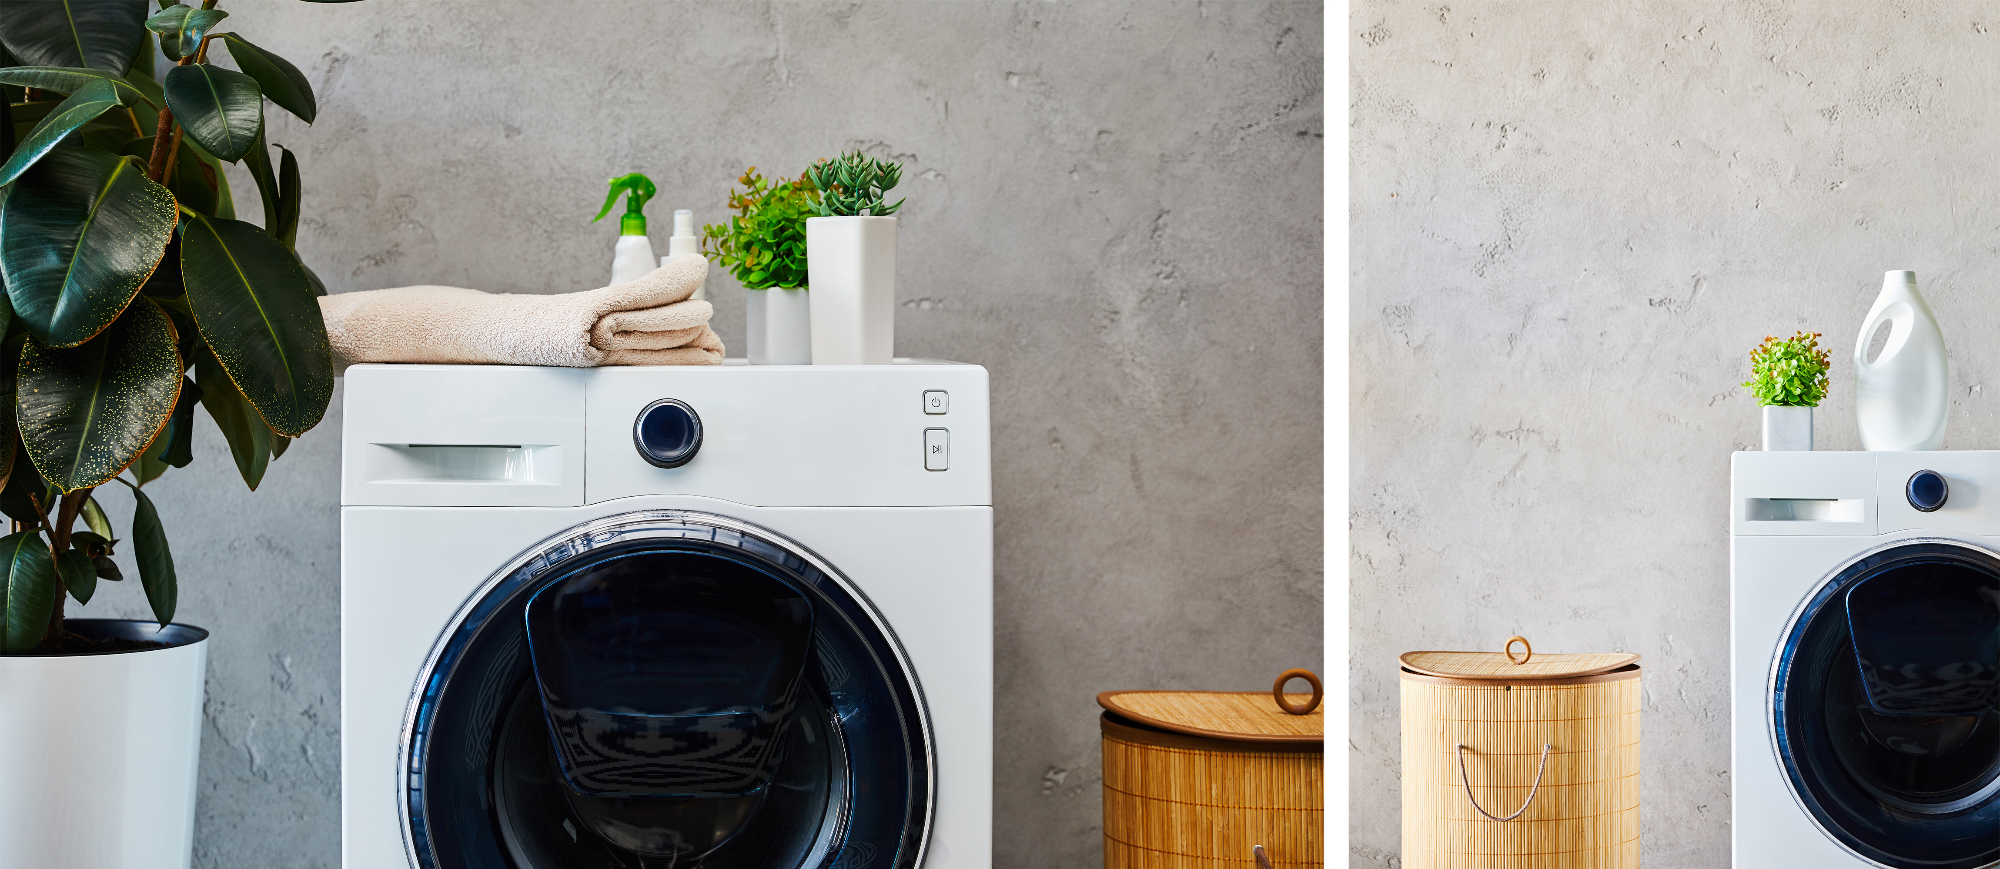 Boljši pralni stroji v pralnici kakor pri nas doma